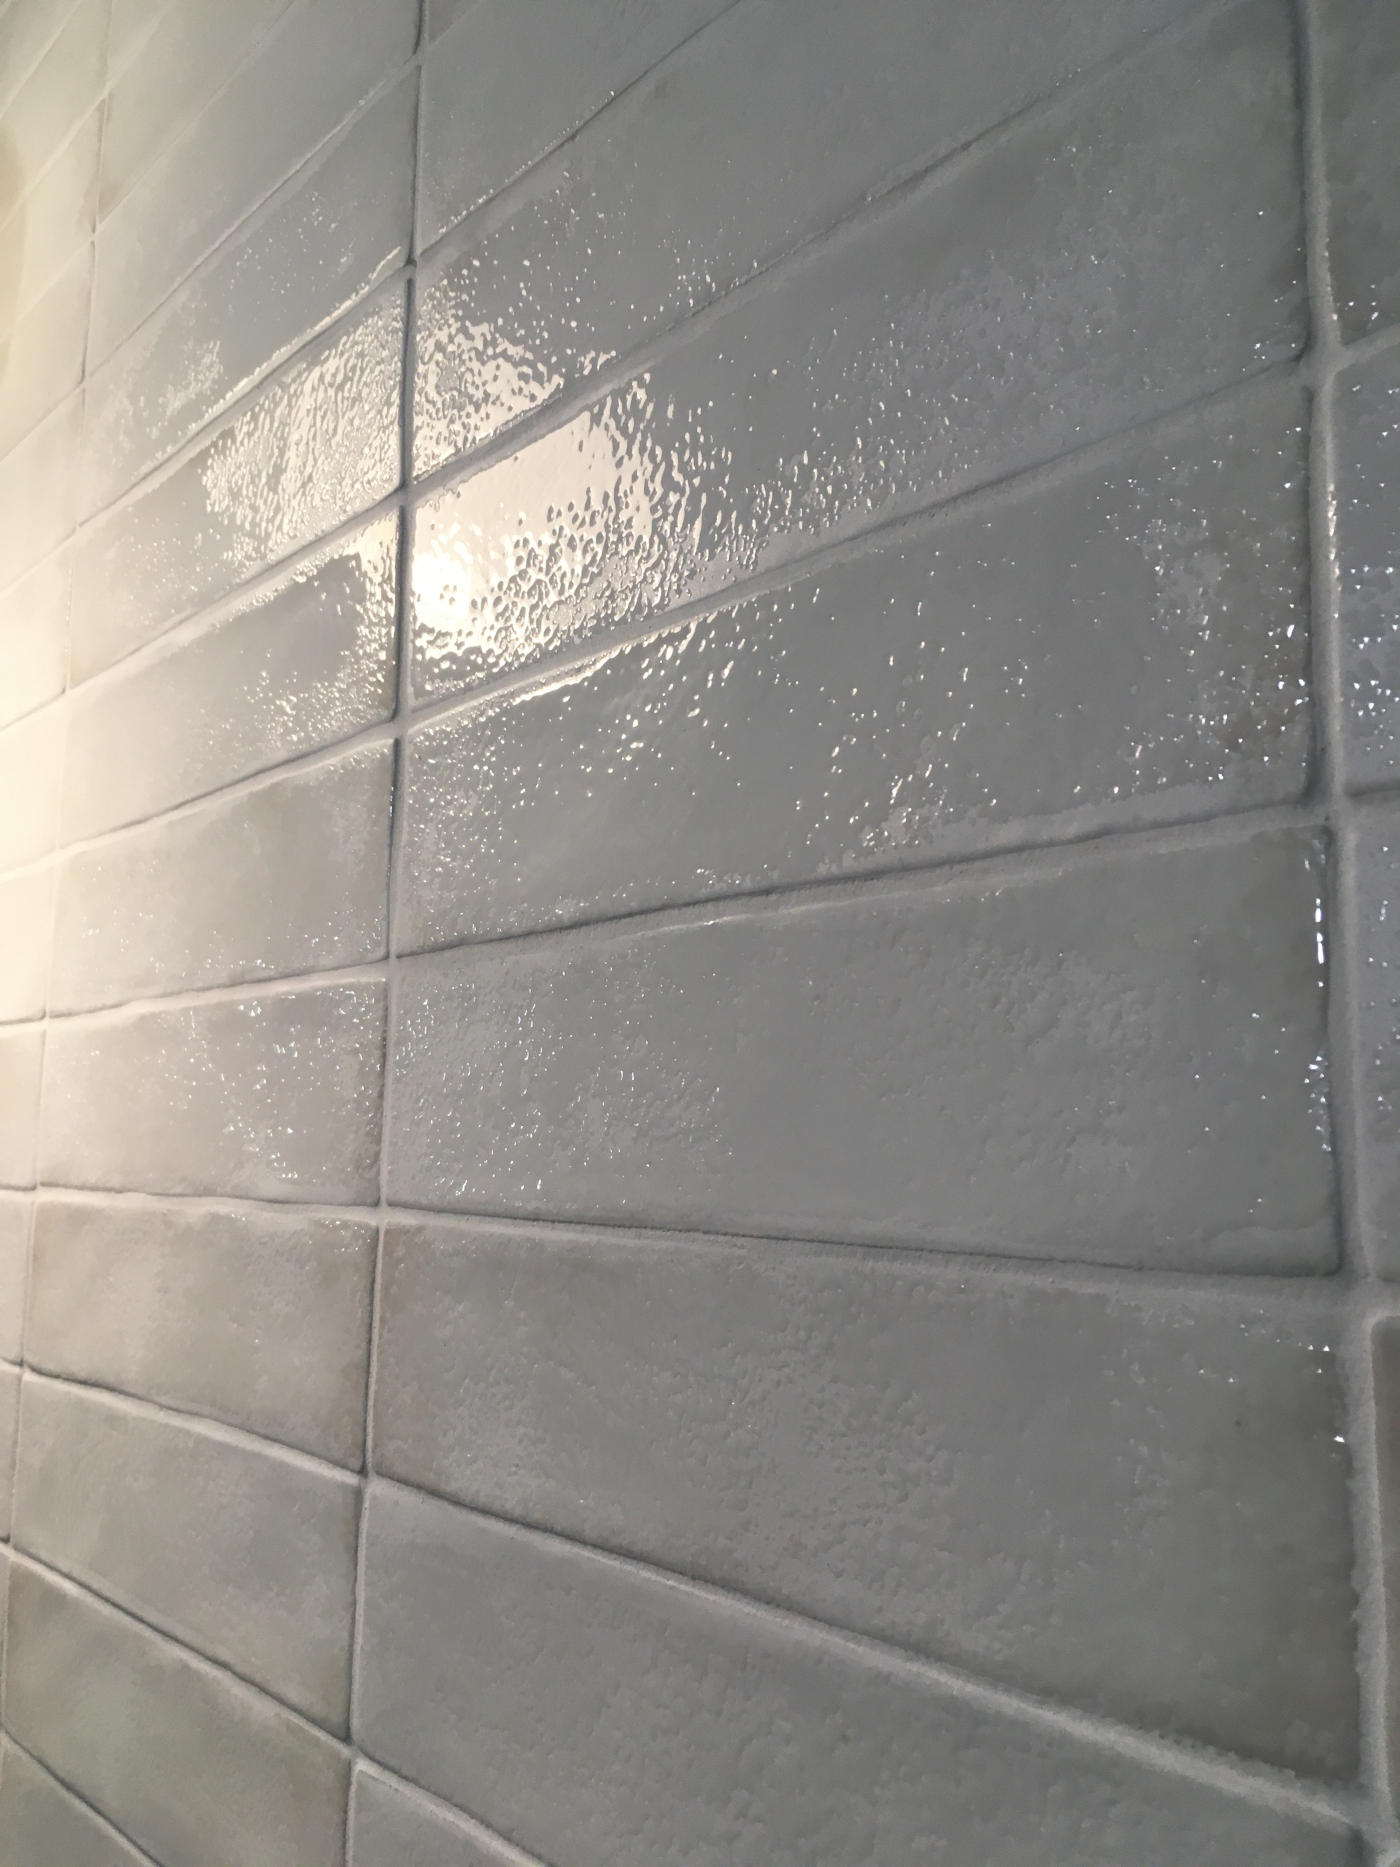 Płytki białe, błyszczące, ścienne - Peronda Harmony SUNSET WHITE 6x25cm. Małe kafelki na ścianie z błyszczącą powierzchnią.